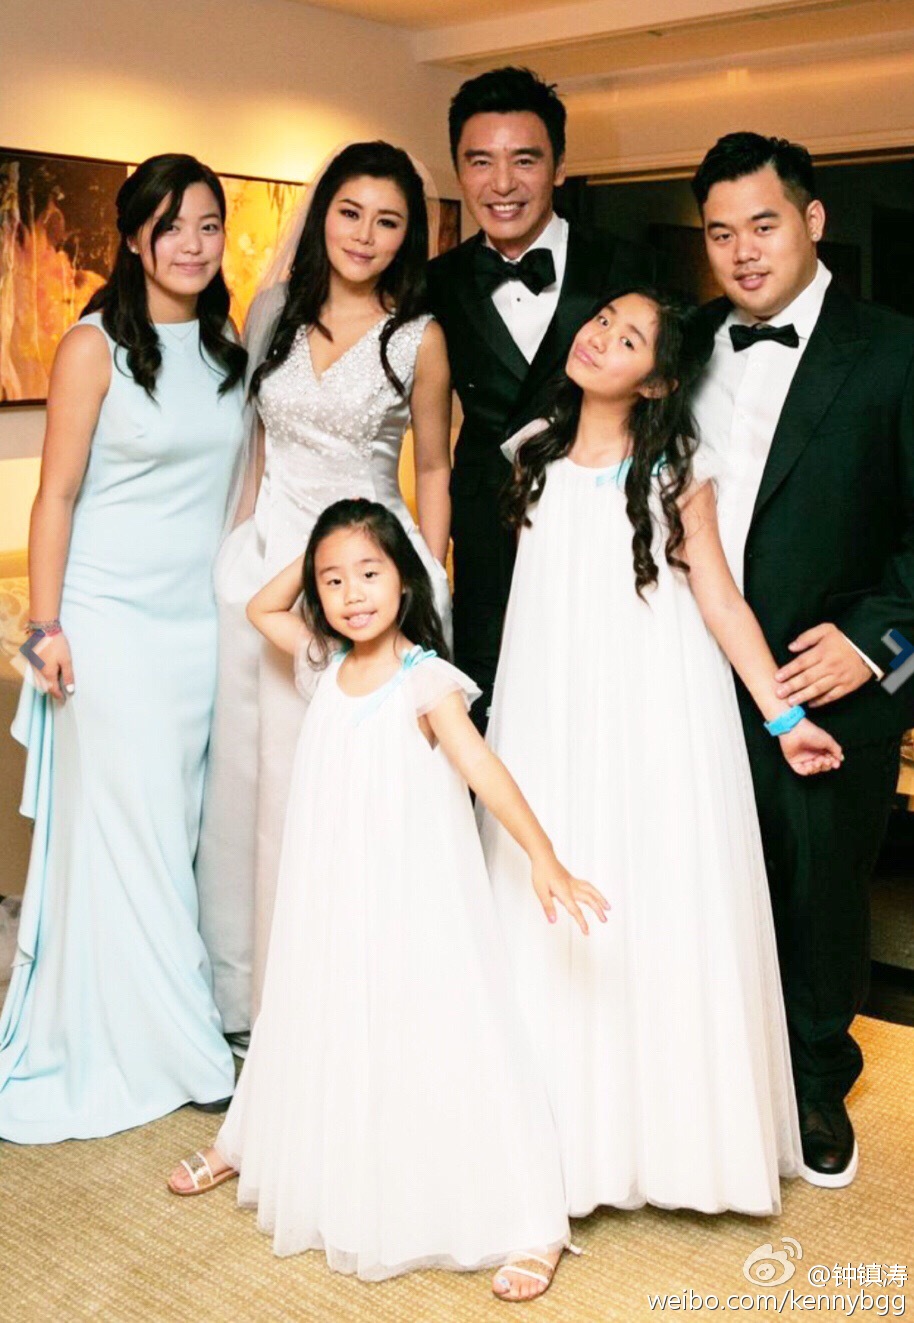 当年，钟镇涛与章小惠所生的一对子女钟嘉浚、钟嘉晴，也有出席婚礼祝婚父亲。